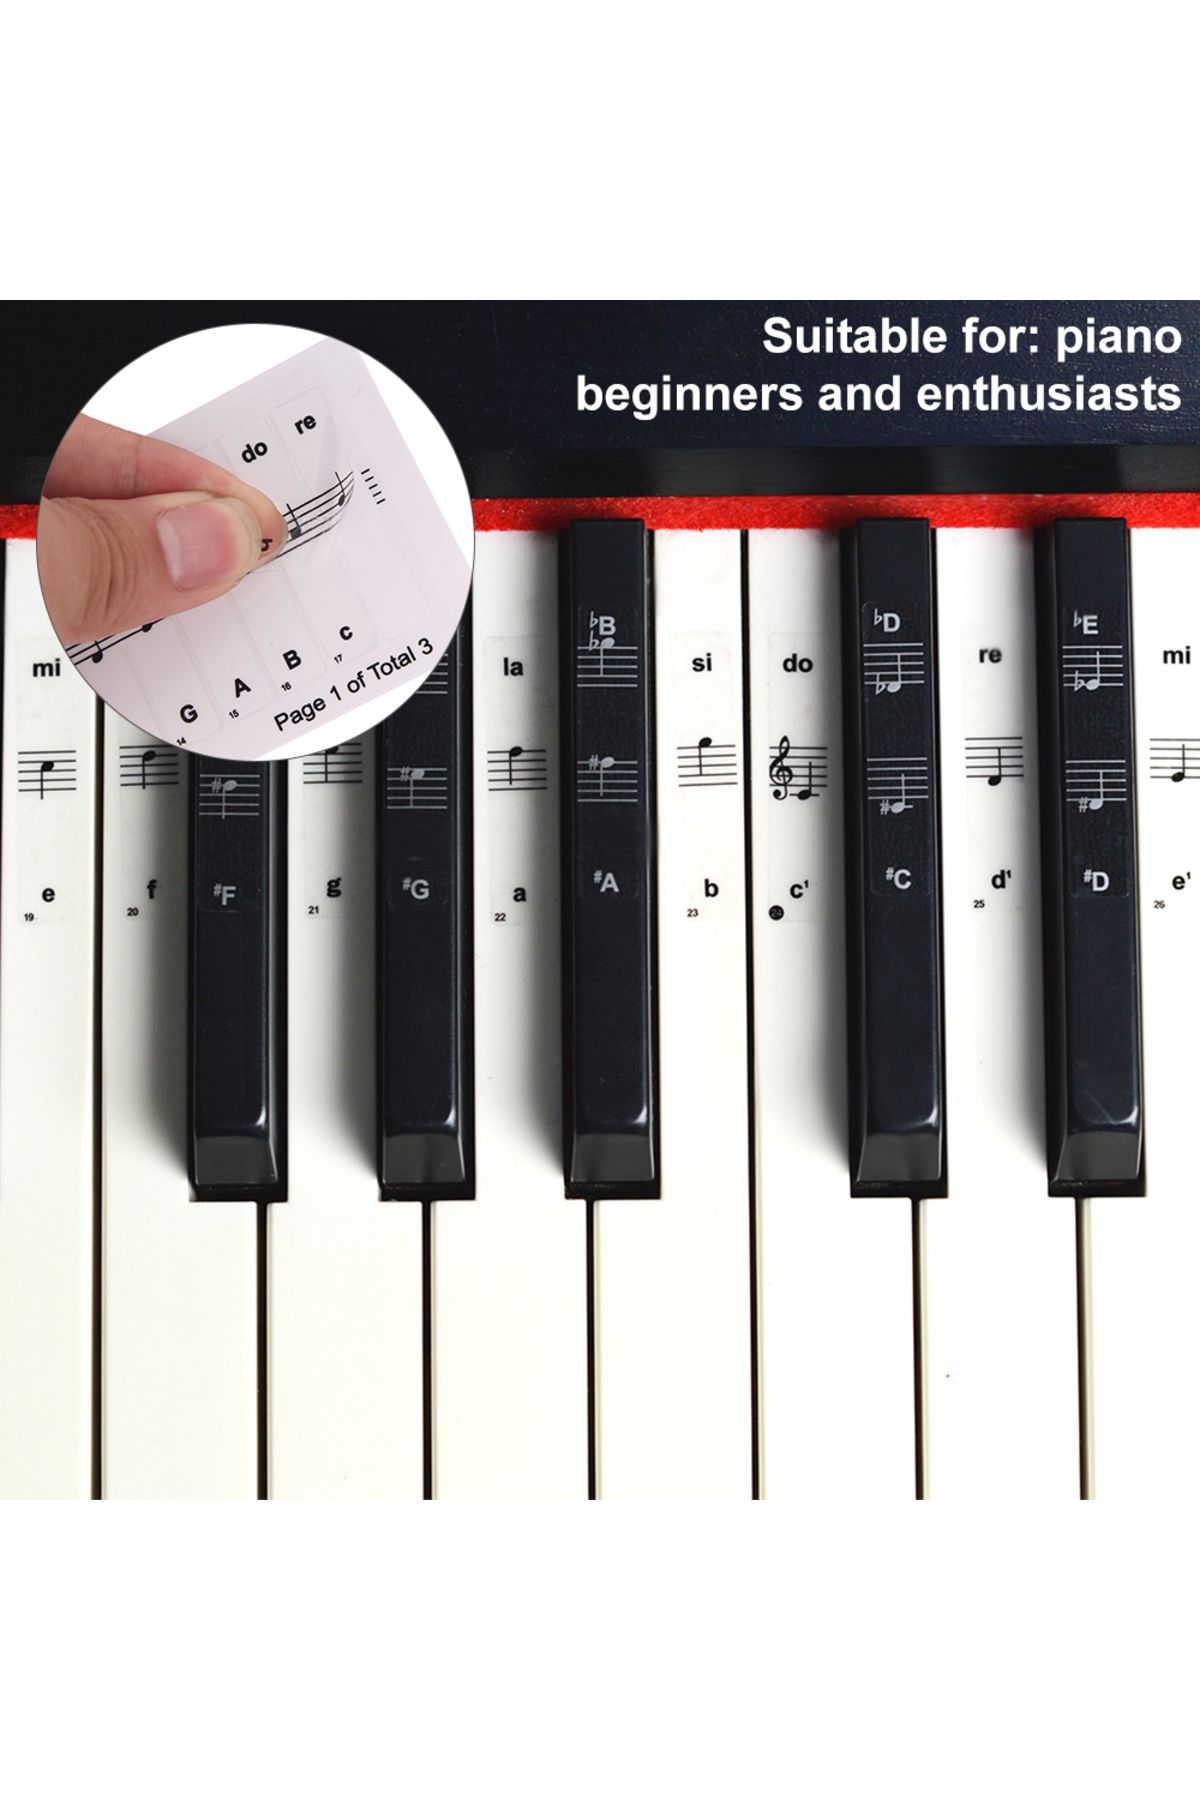 happypotam Piyano Org Klavye Tuşları Için Nota Sticker Etiketi Aksesuarı 37-49-54-61-88 Tuşlara Uygun